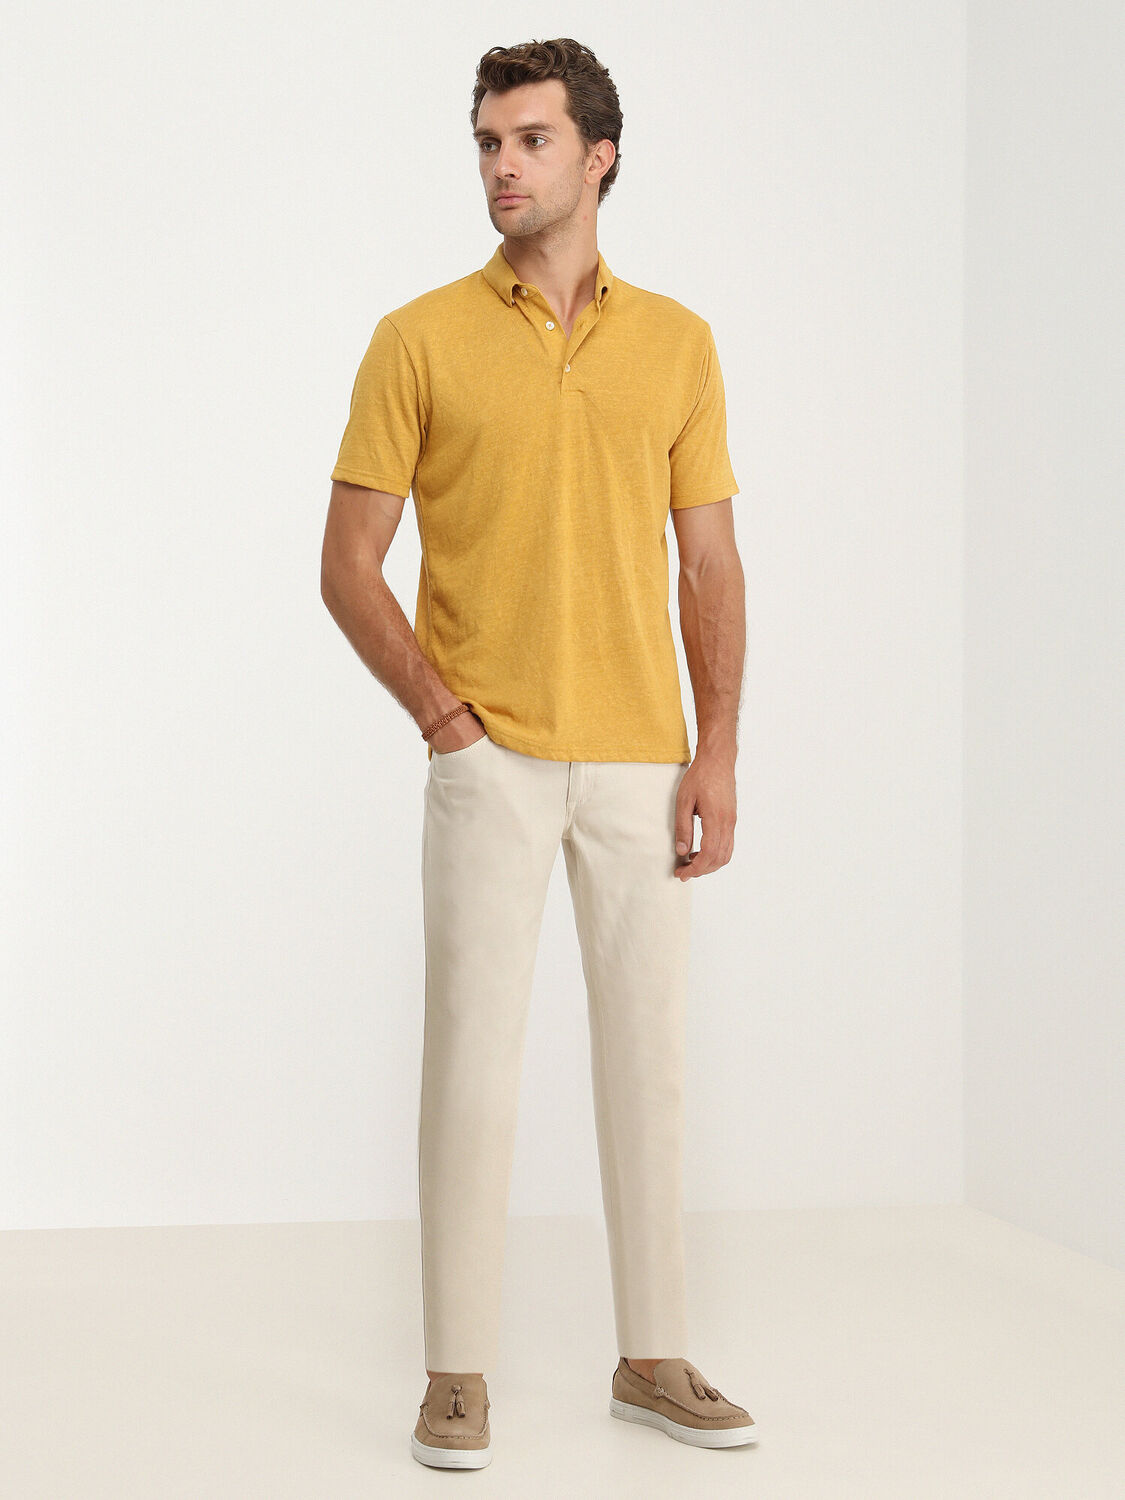 Safran Düz Polo Yaka Pamuk Karışımlı T-Shirt